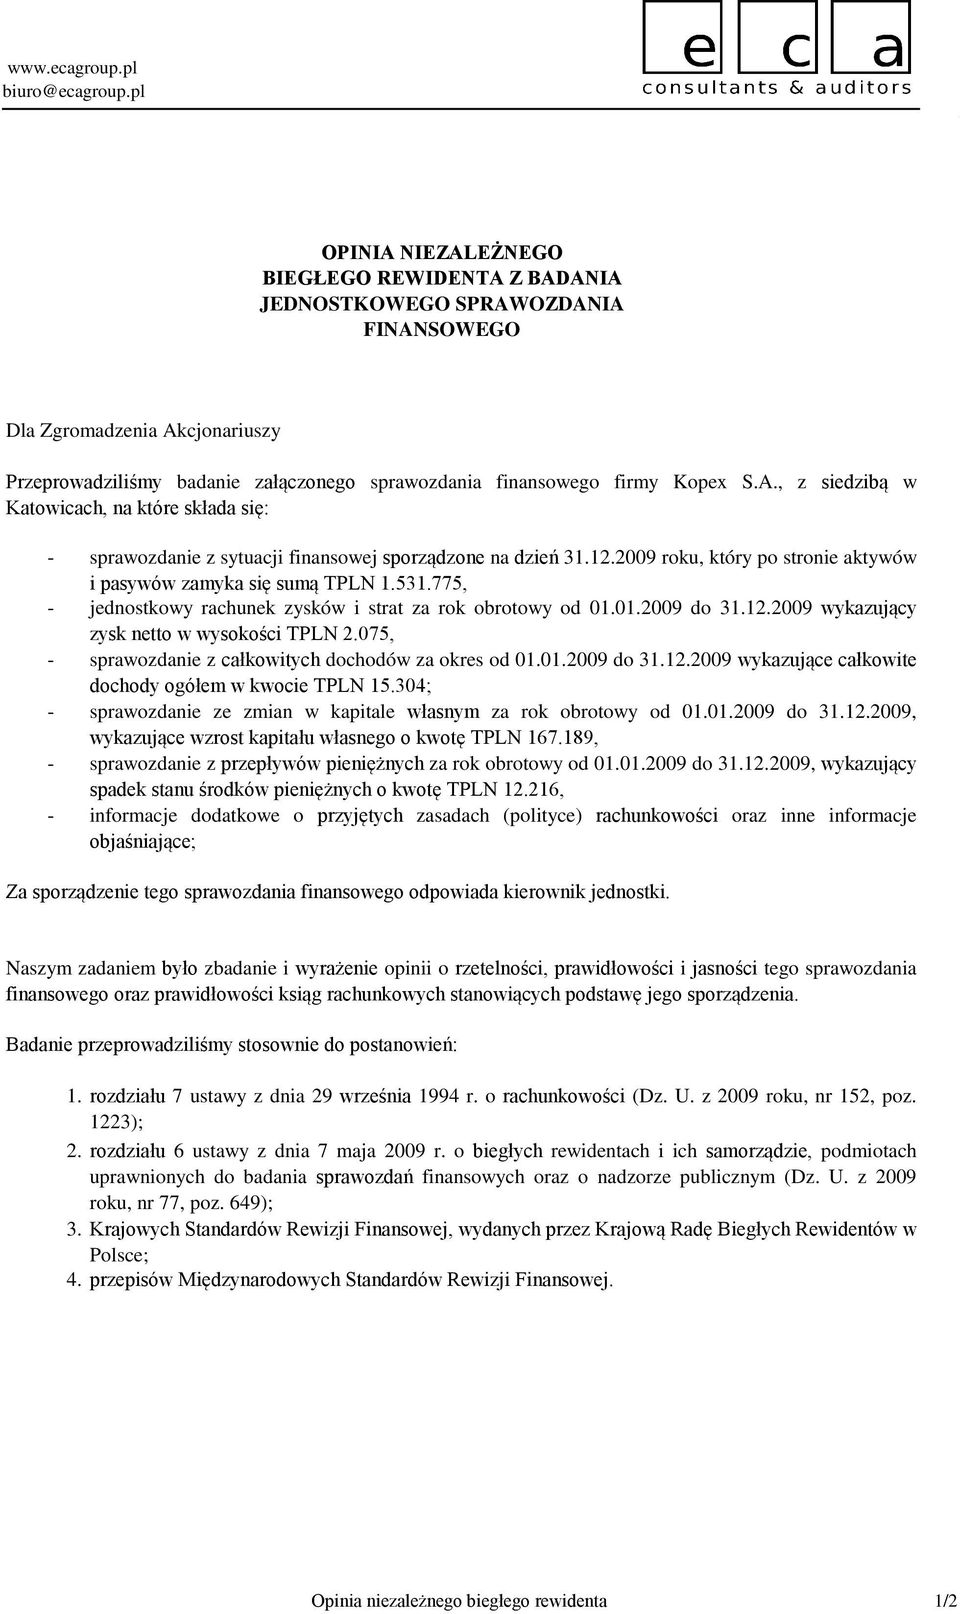 A., z siedzibą w Katowicach, na które składa się: - - - - - - sprawozdanie z sytuacji finansowej sporządzone na dzień 31.12.2009 roku, który po stronie aktywów i pasywów zamyka się sumą 1.531.